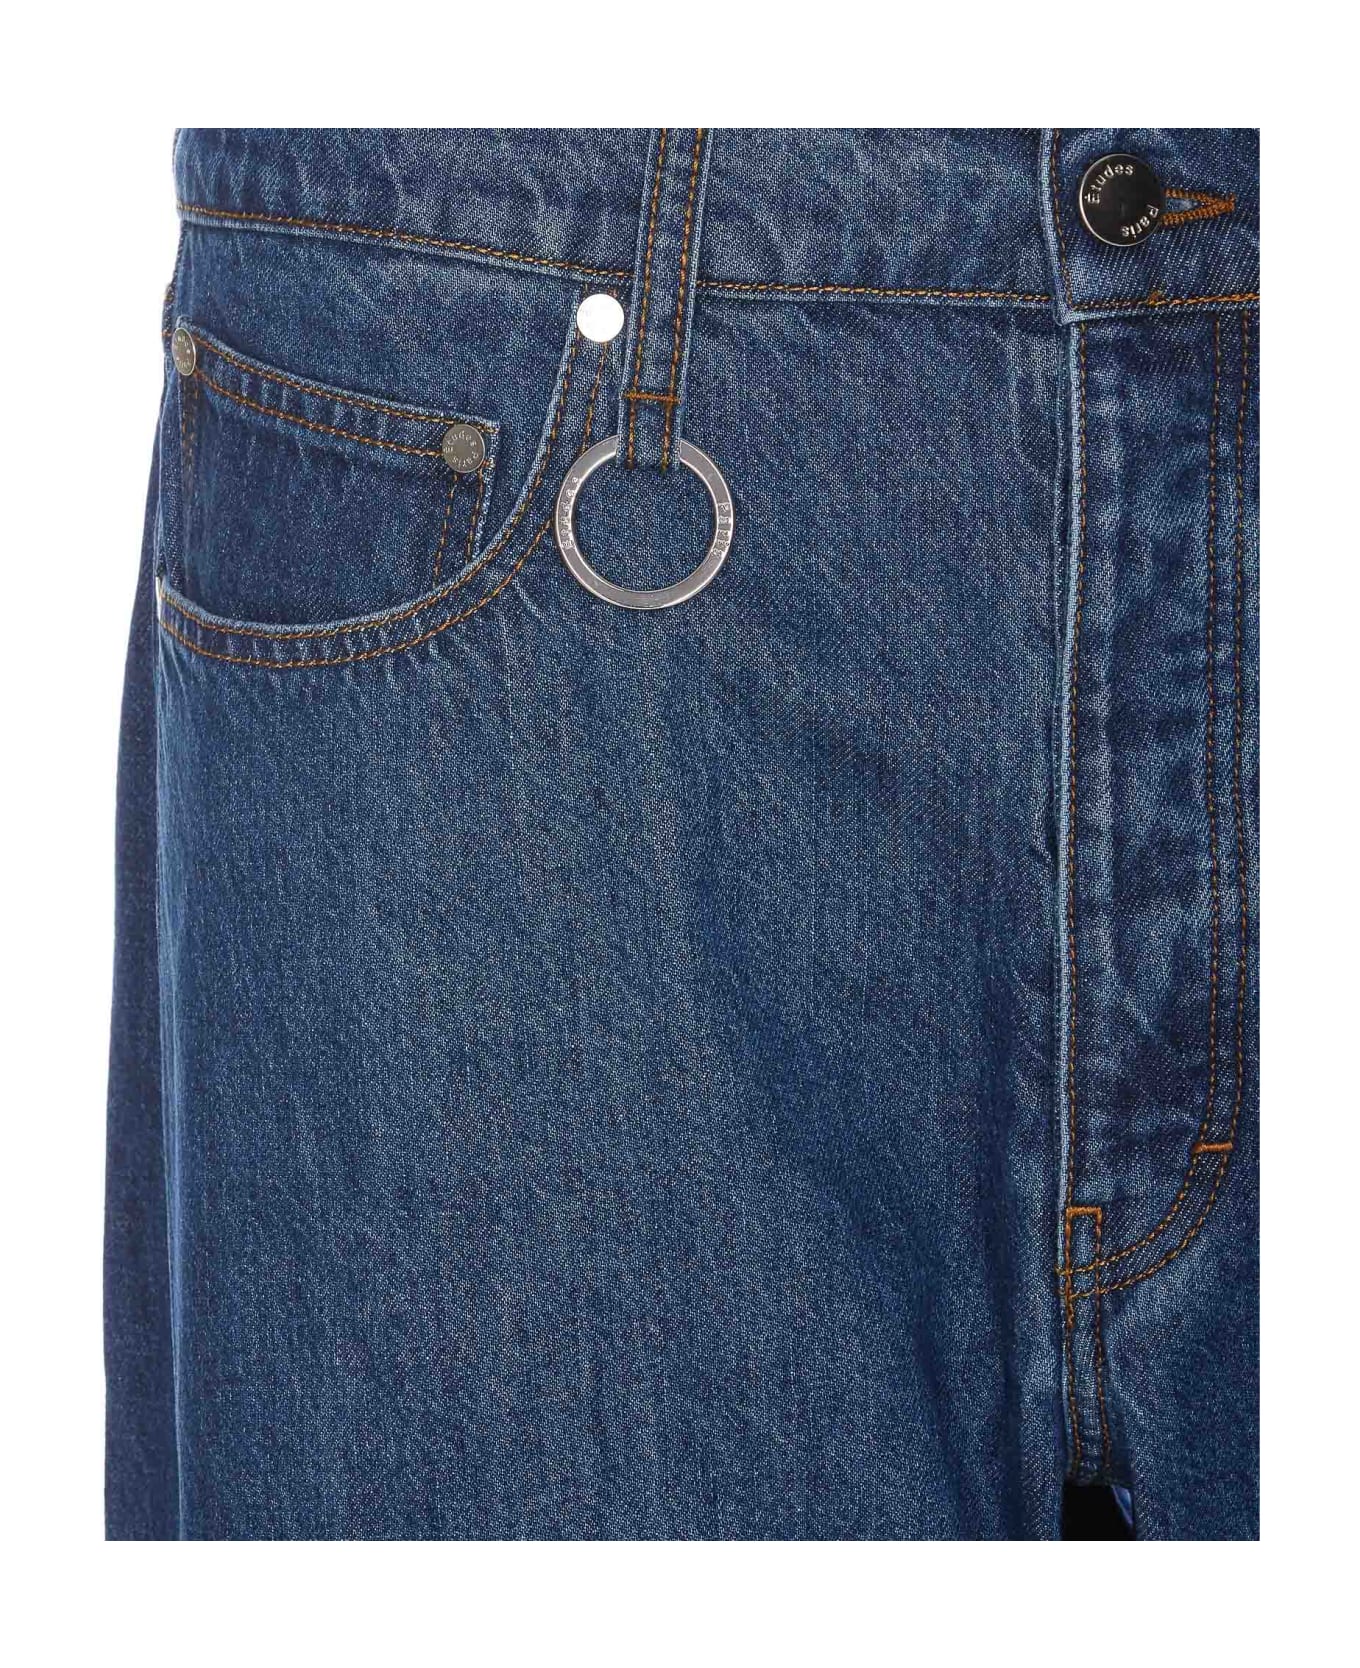 Études Surface Denim Jeans - Blue